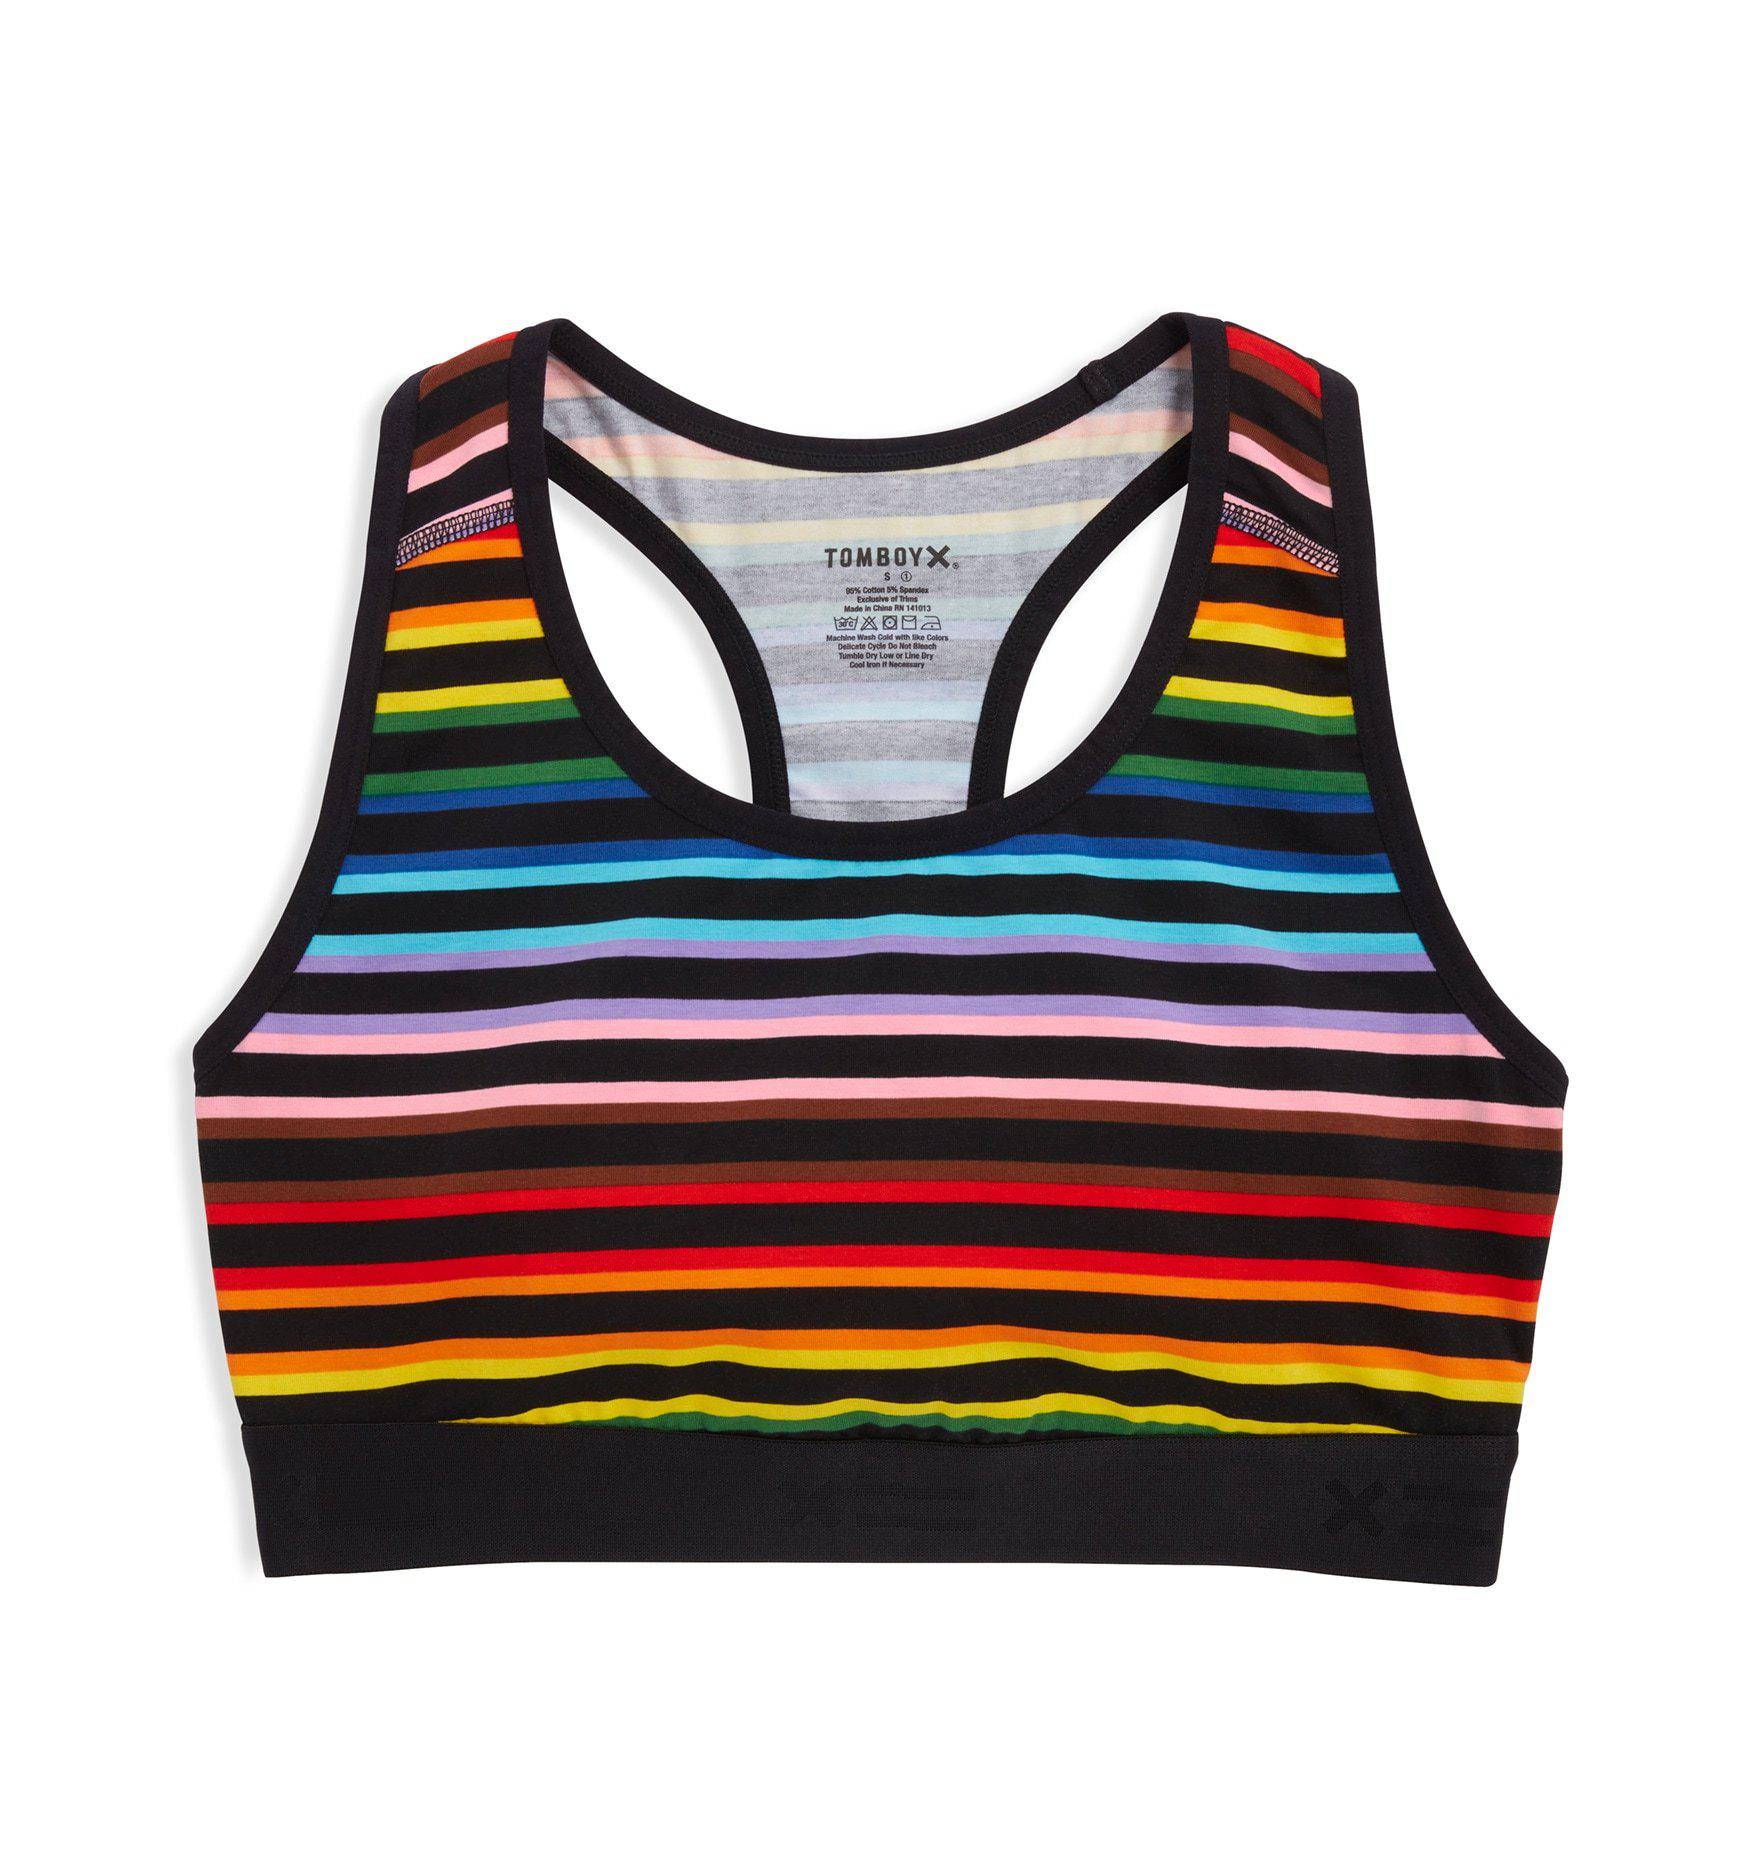 TOMBOY X Racerback Soft Bra - Rainbow Pride Stripes SIZE 2X